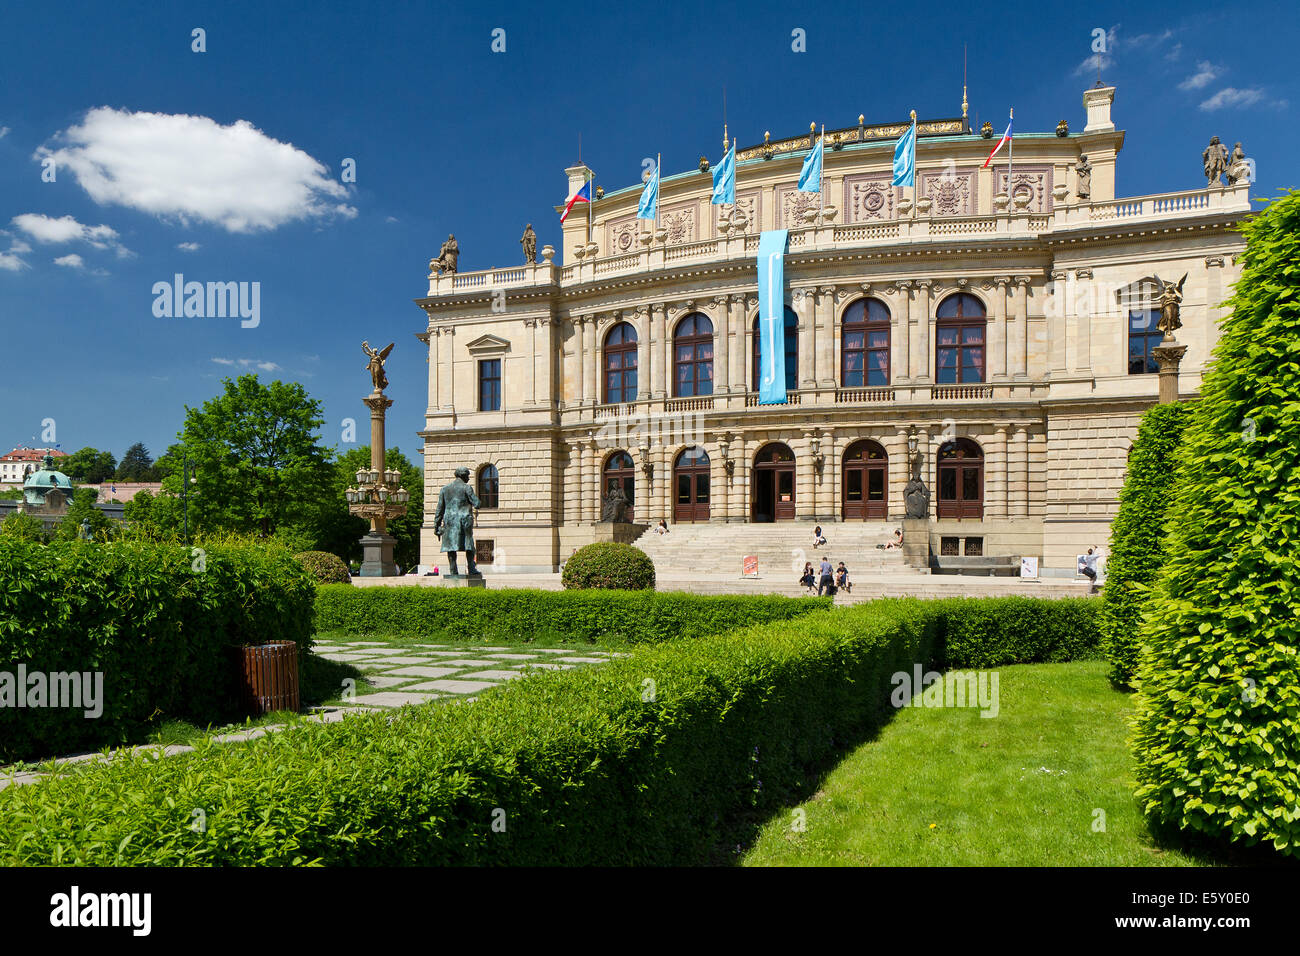 El Rudolfinum, Palachovo náměstí, Staré Město, Praha, Česká republika Foto de stock